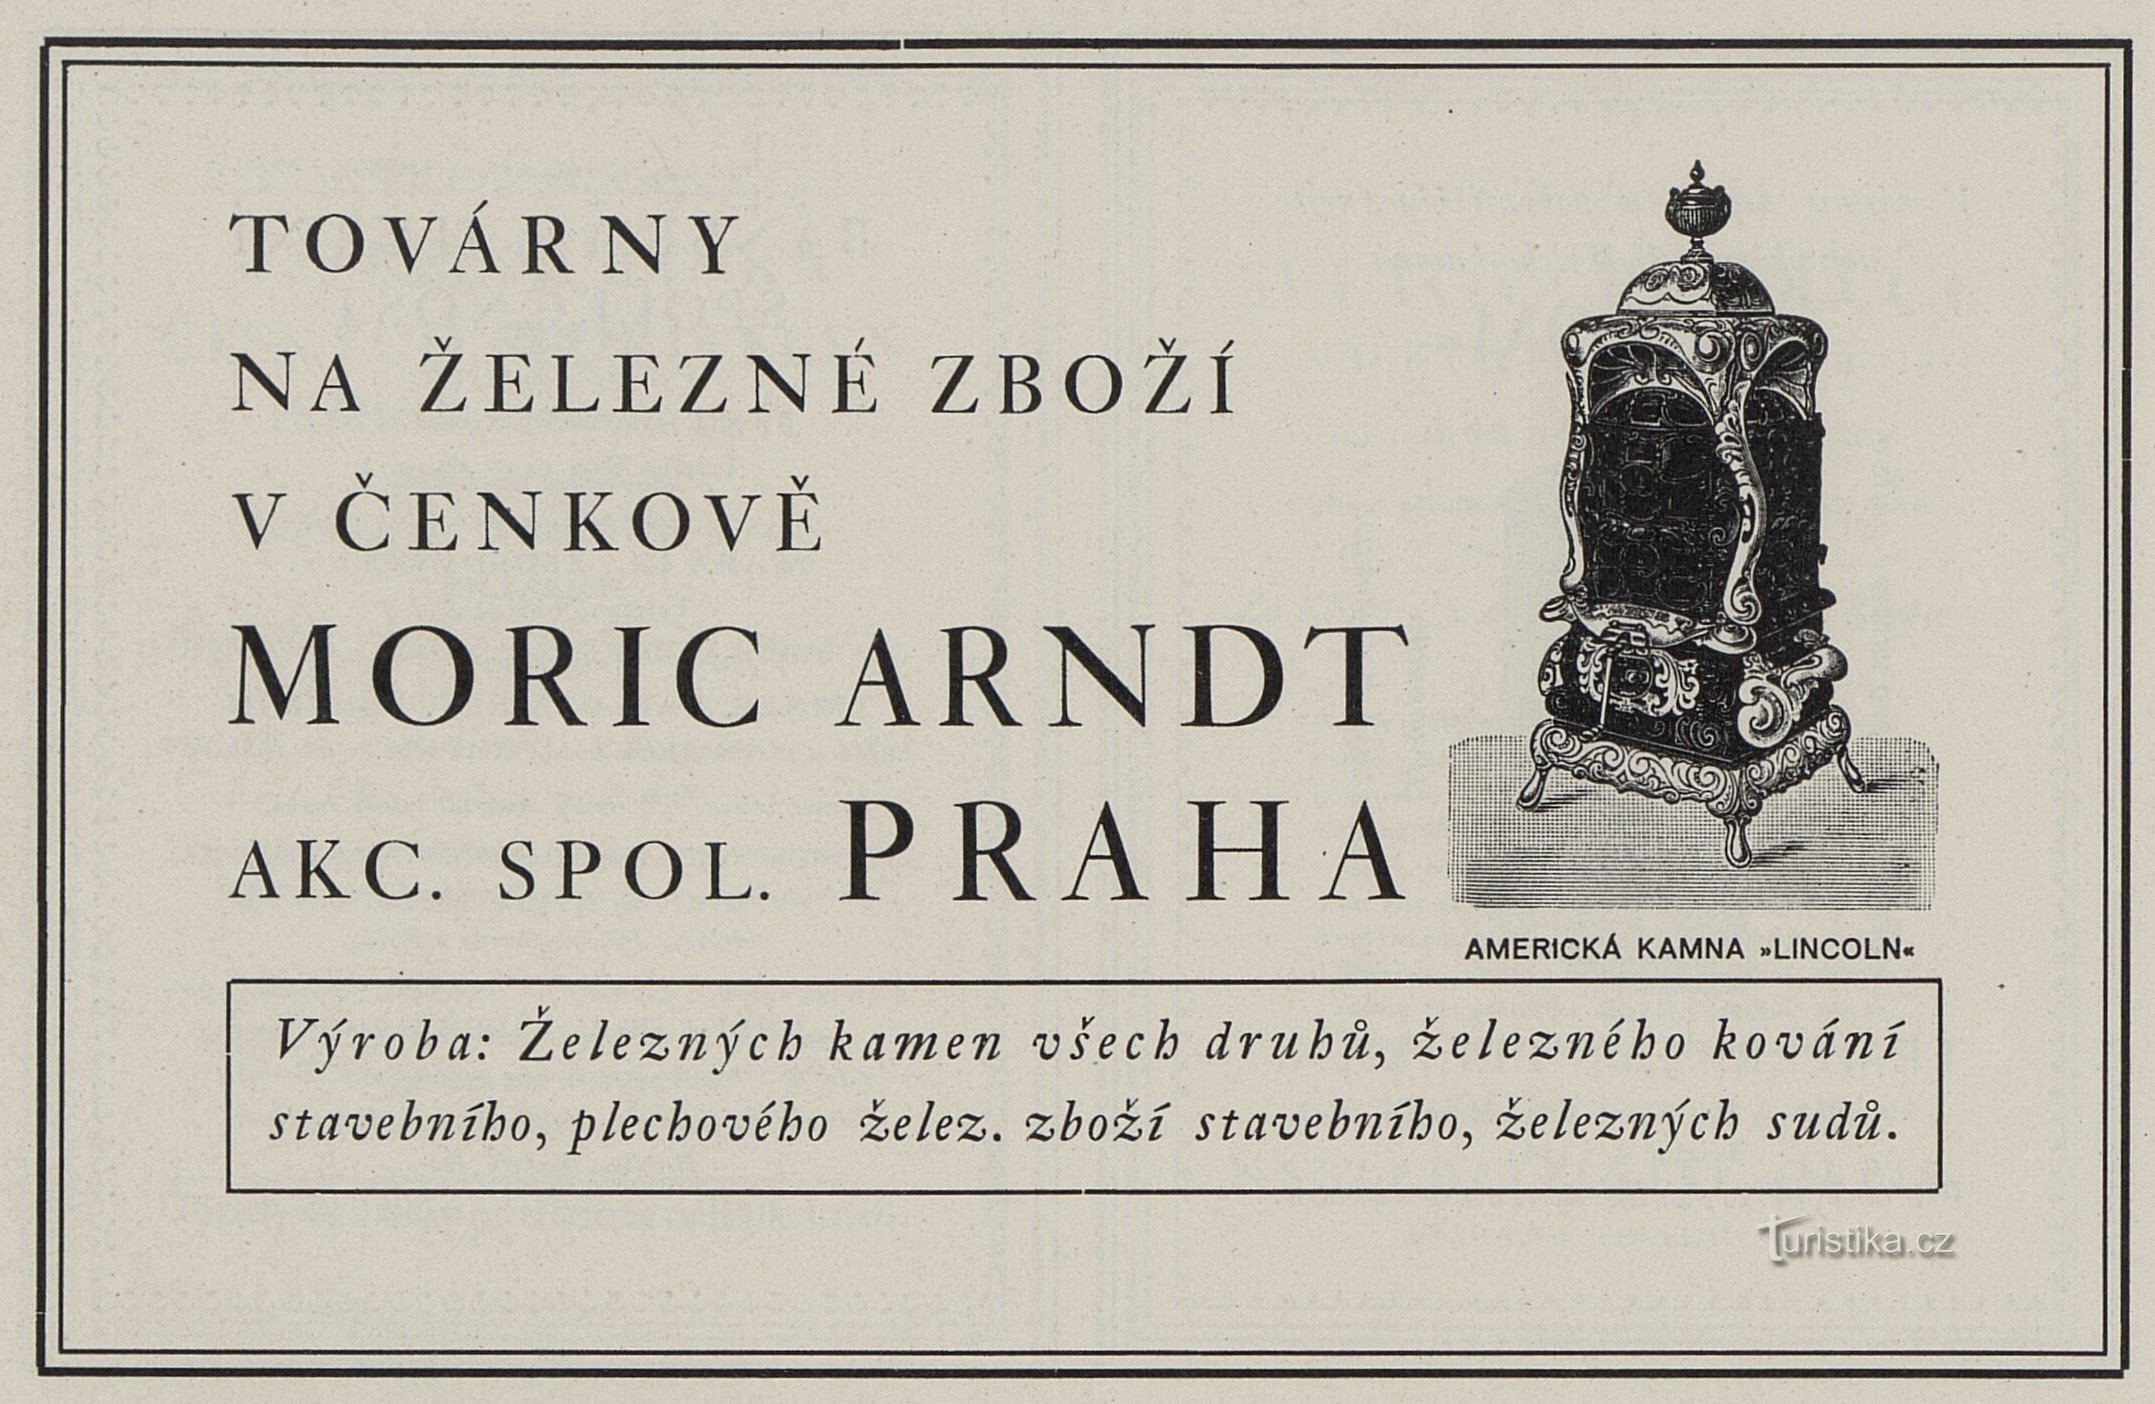 O reclamă din 1925 pentru Moric Arndt